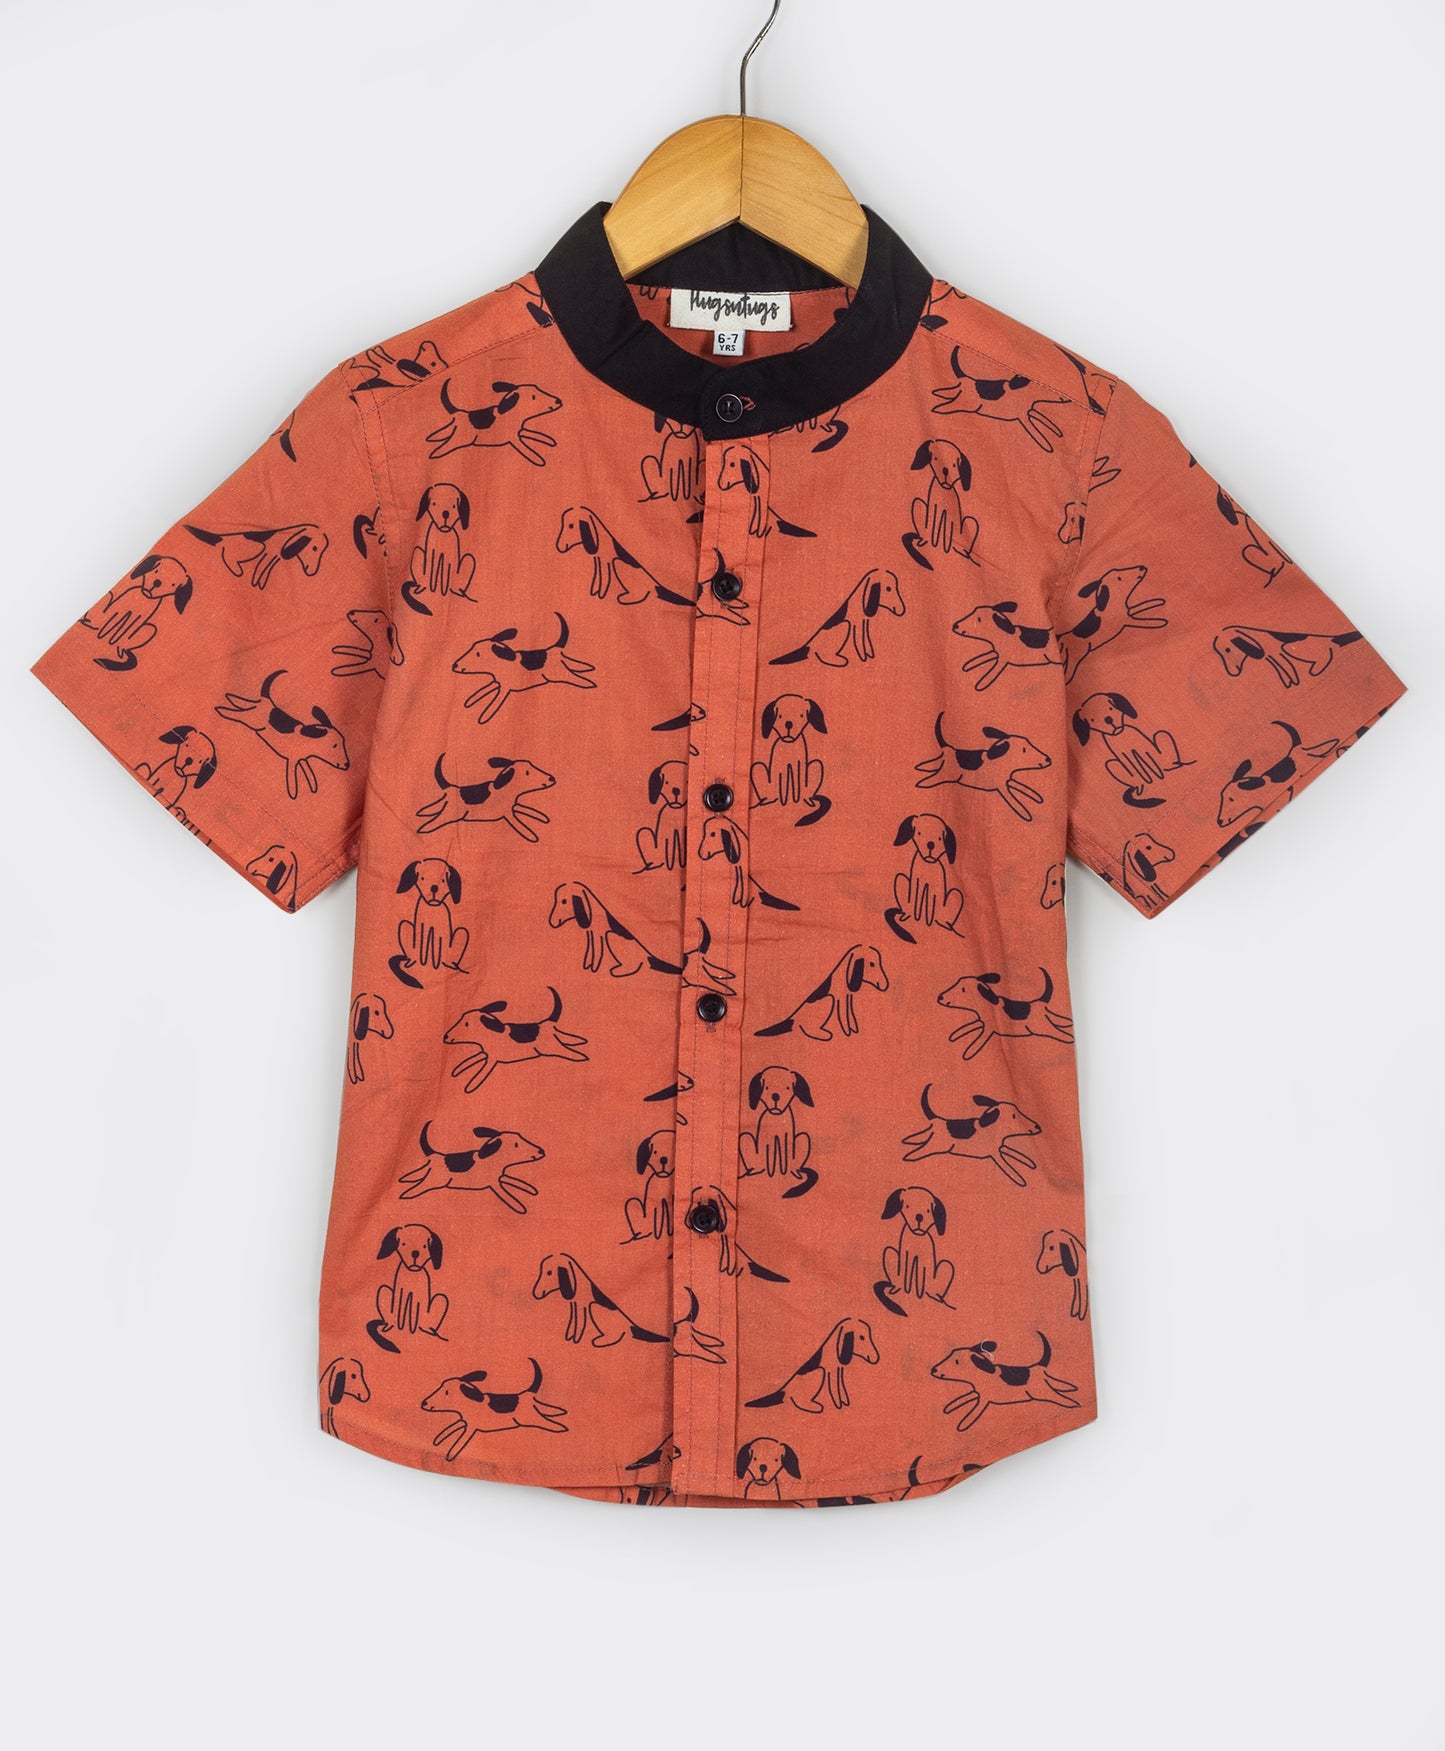 Boys shirt with dog print